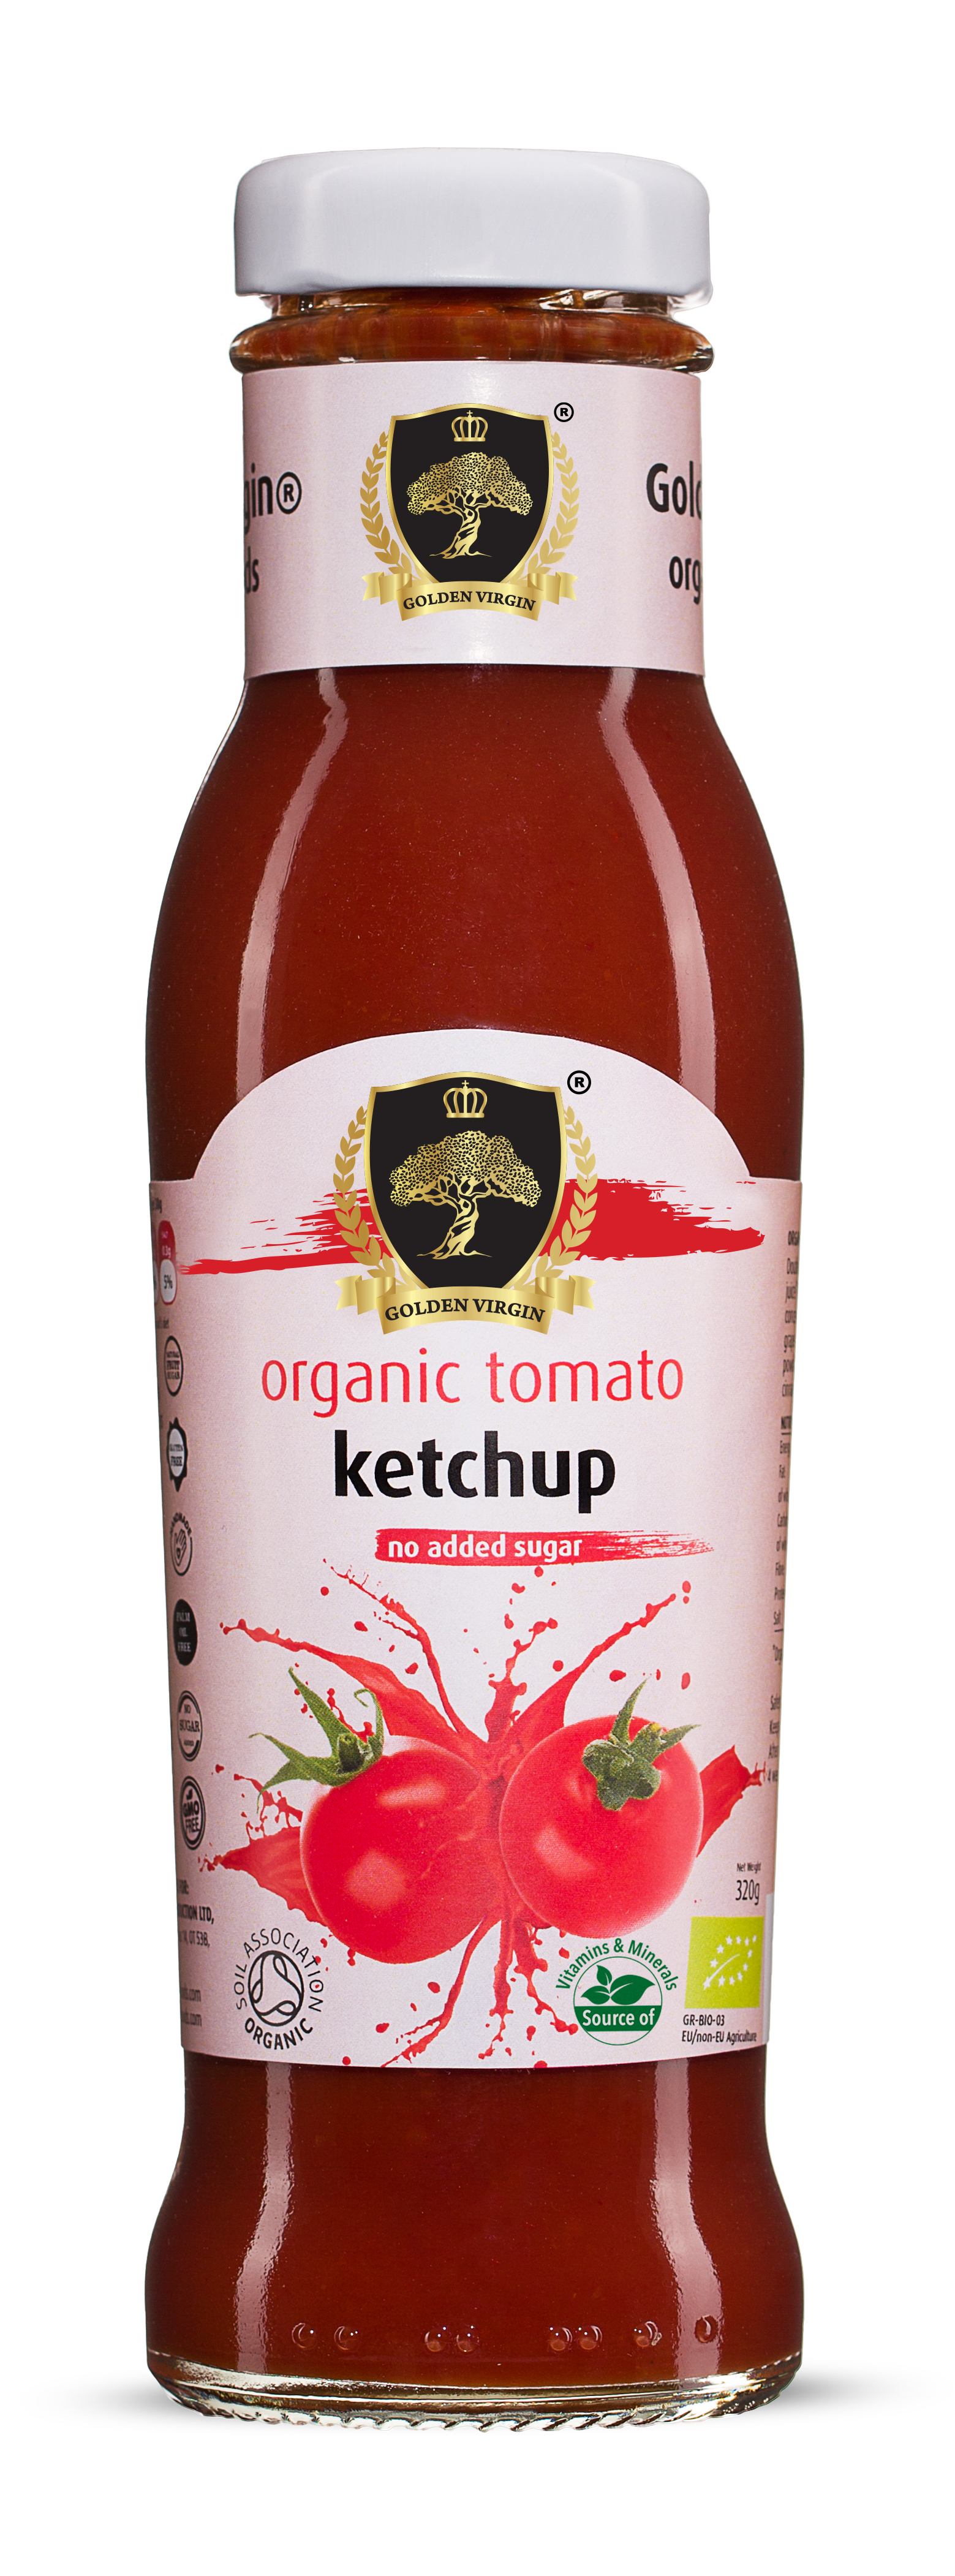 buy organic tomato ketchup in bulk